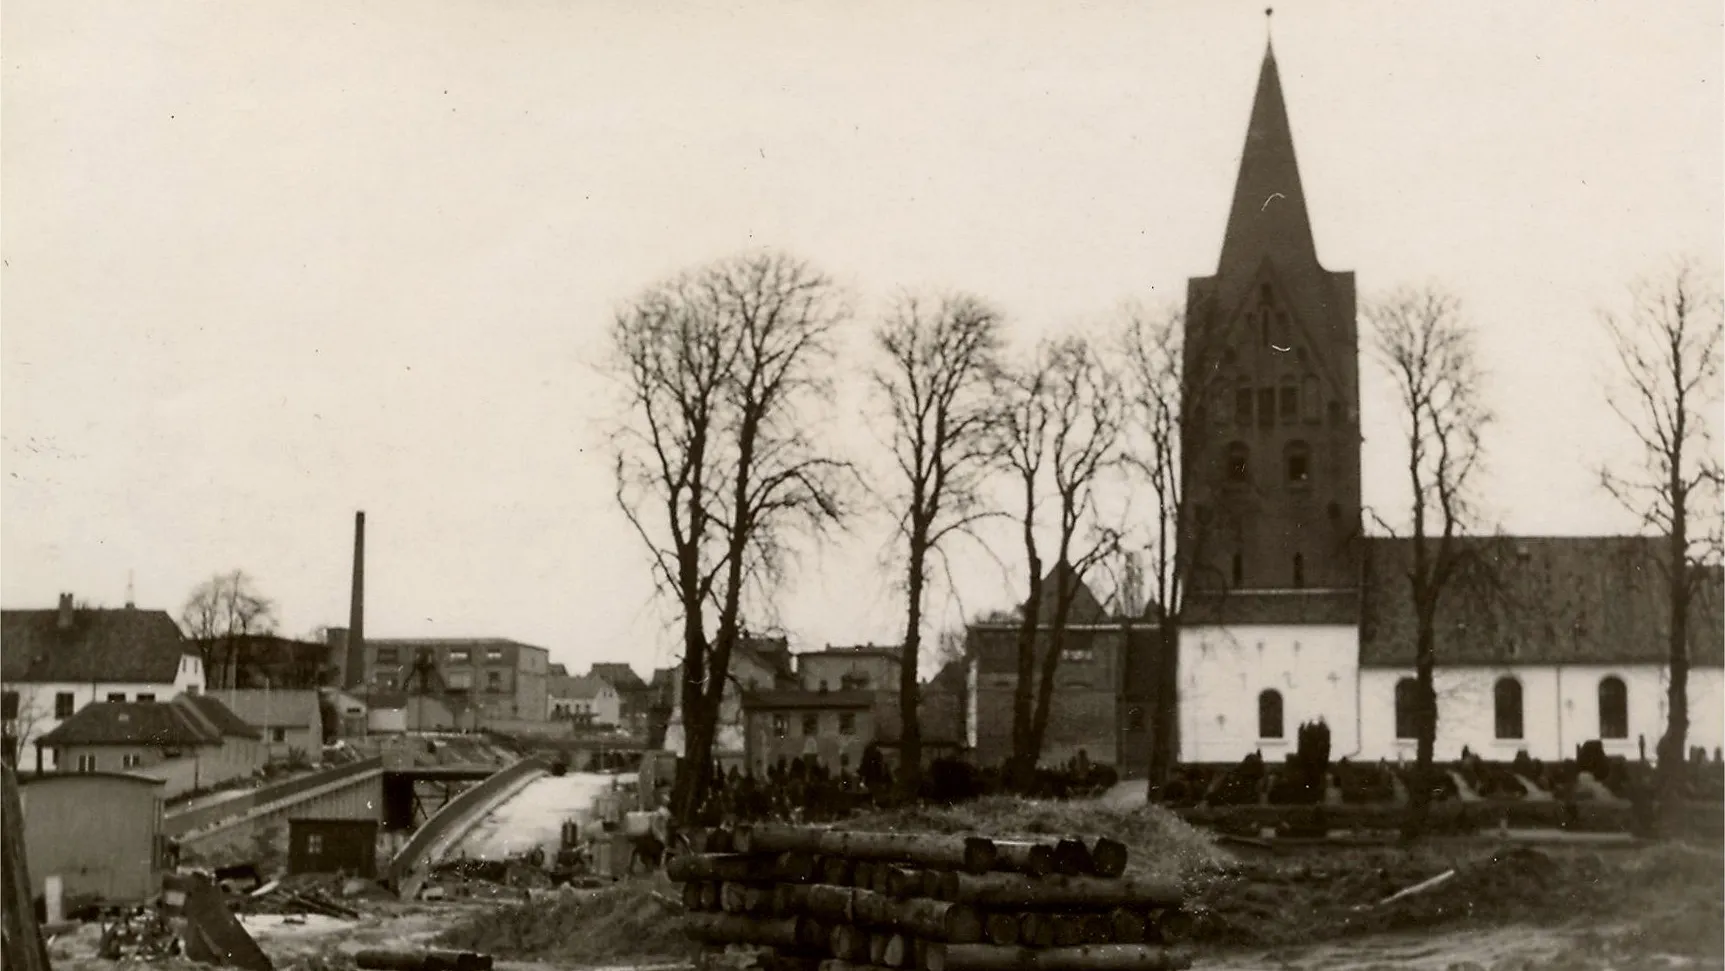 Gl. Haderslev Church - ca. 1954